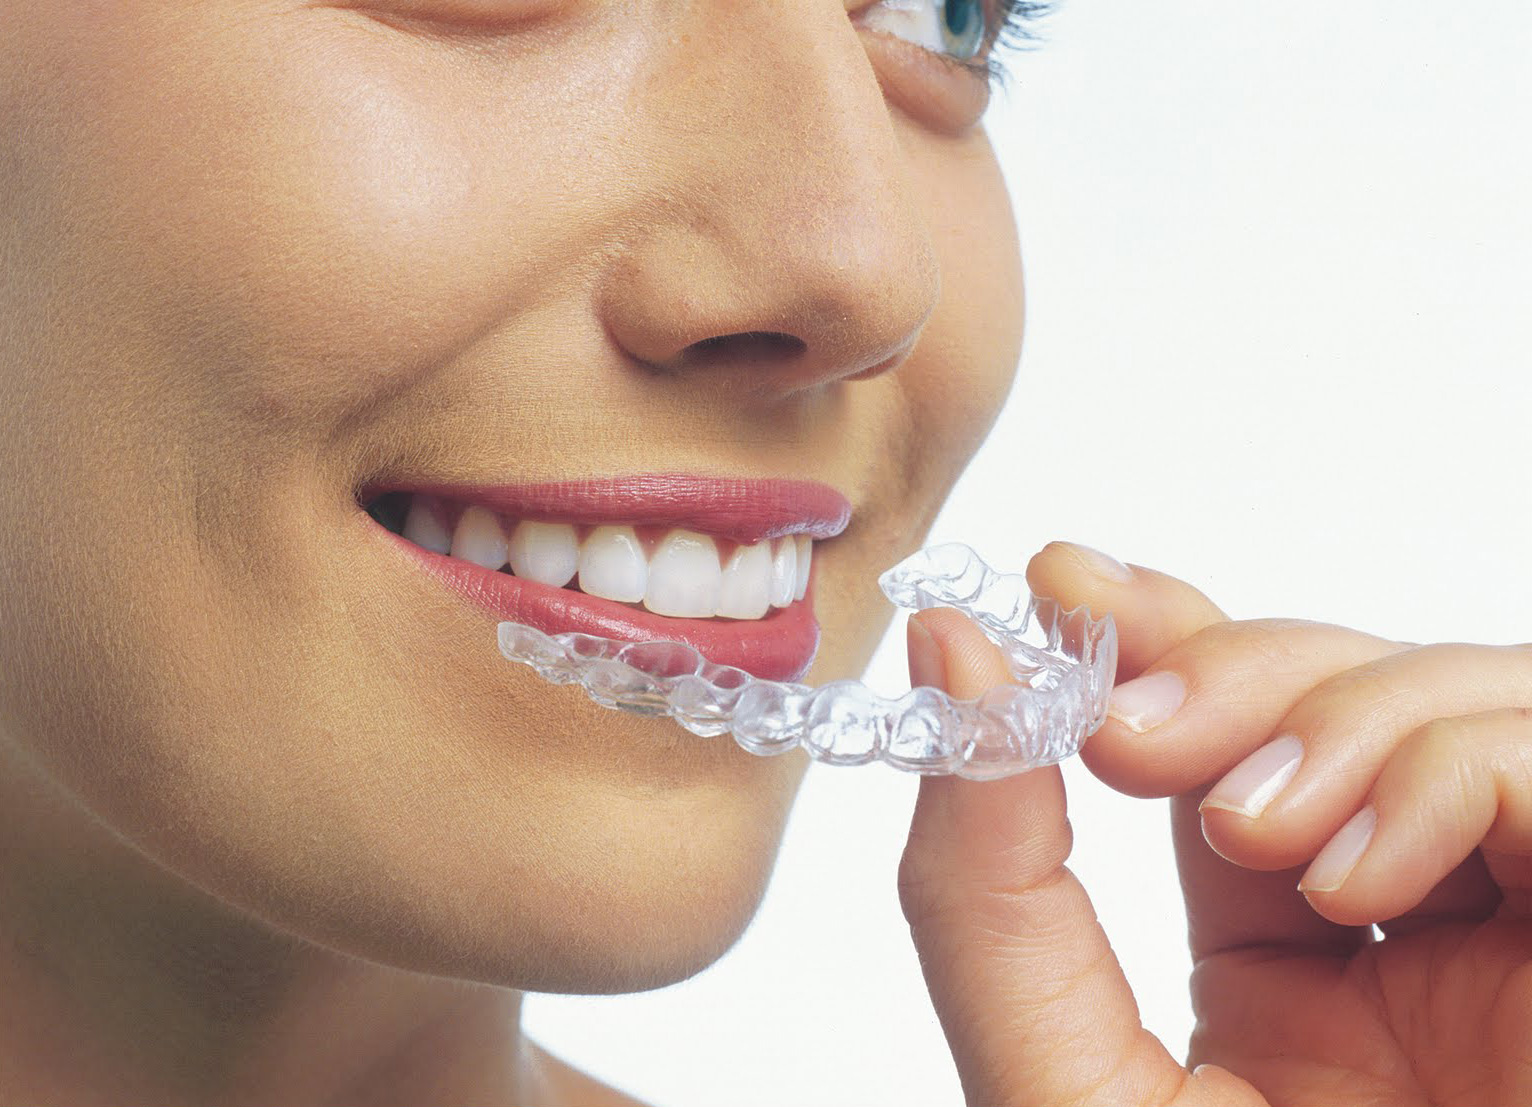 Quy trình niềng răng không mắc cài như thế nào ?